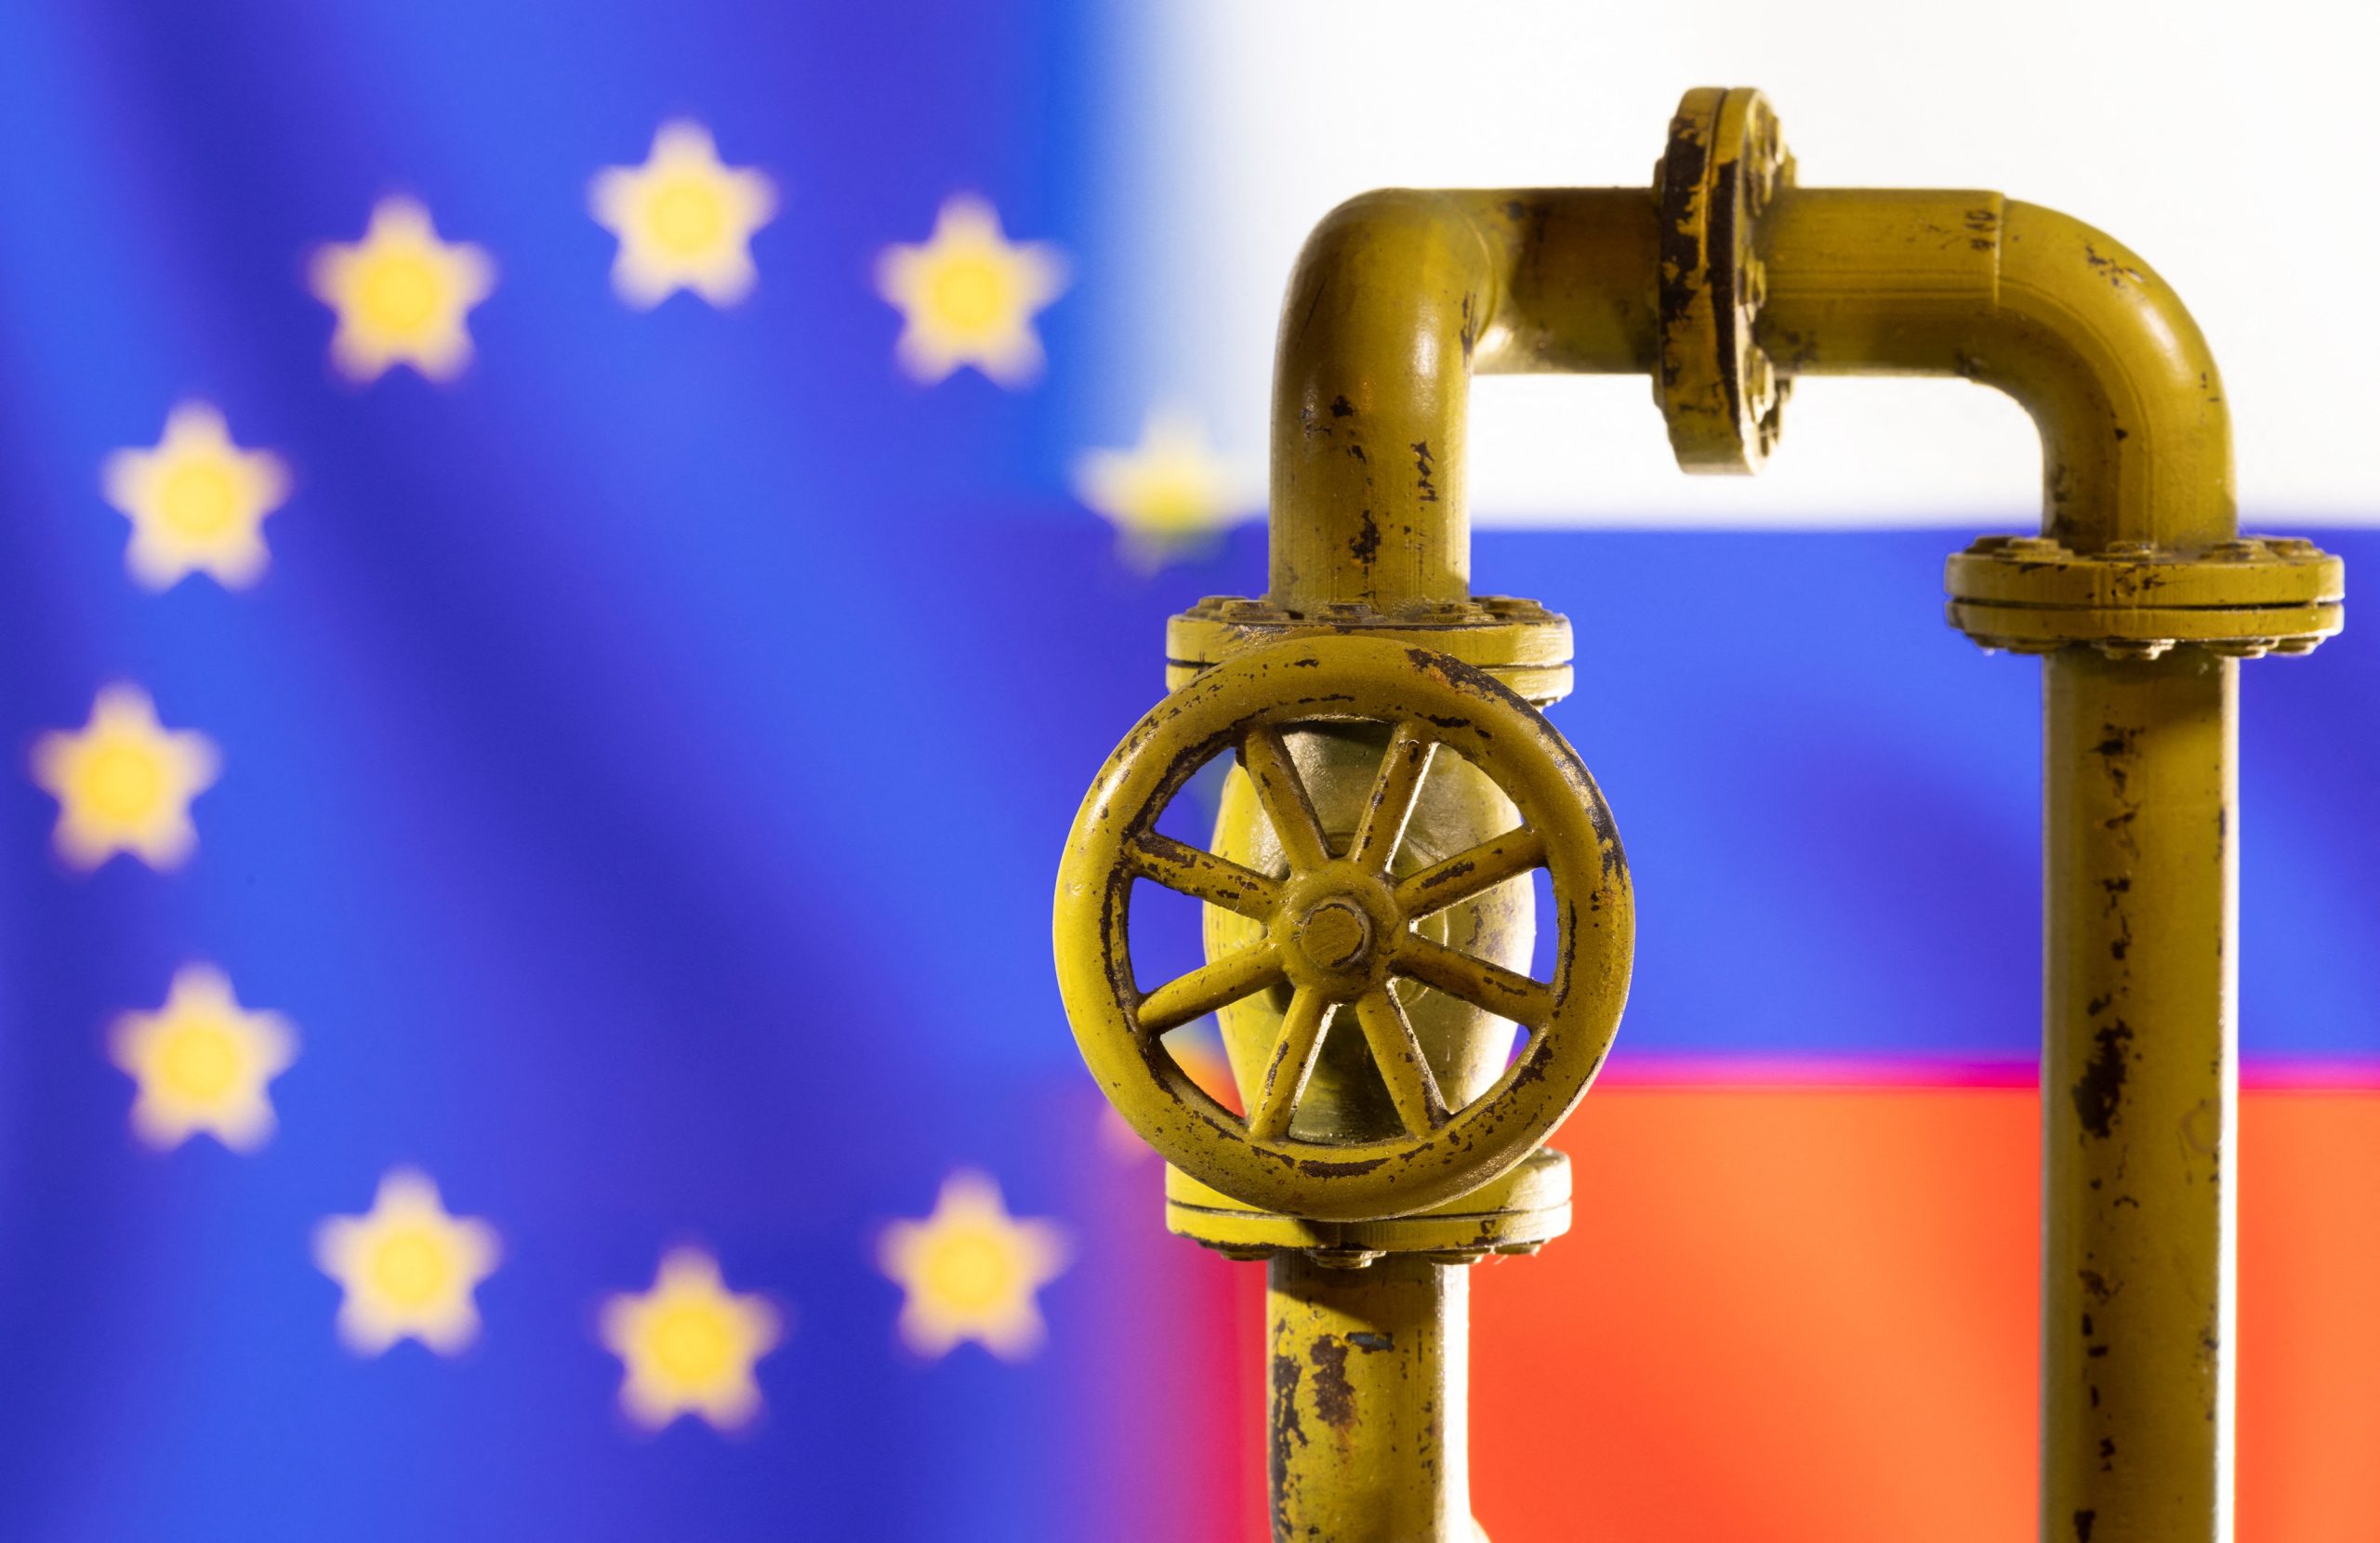 Η ΕΕ αρνείται να πληρώσει σε ρούβλια το φυσικό αέριο που αγοράζει και η Ρωσία κλείνει τις κάνουλες!